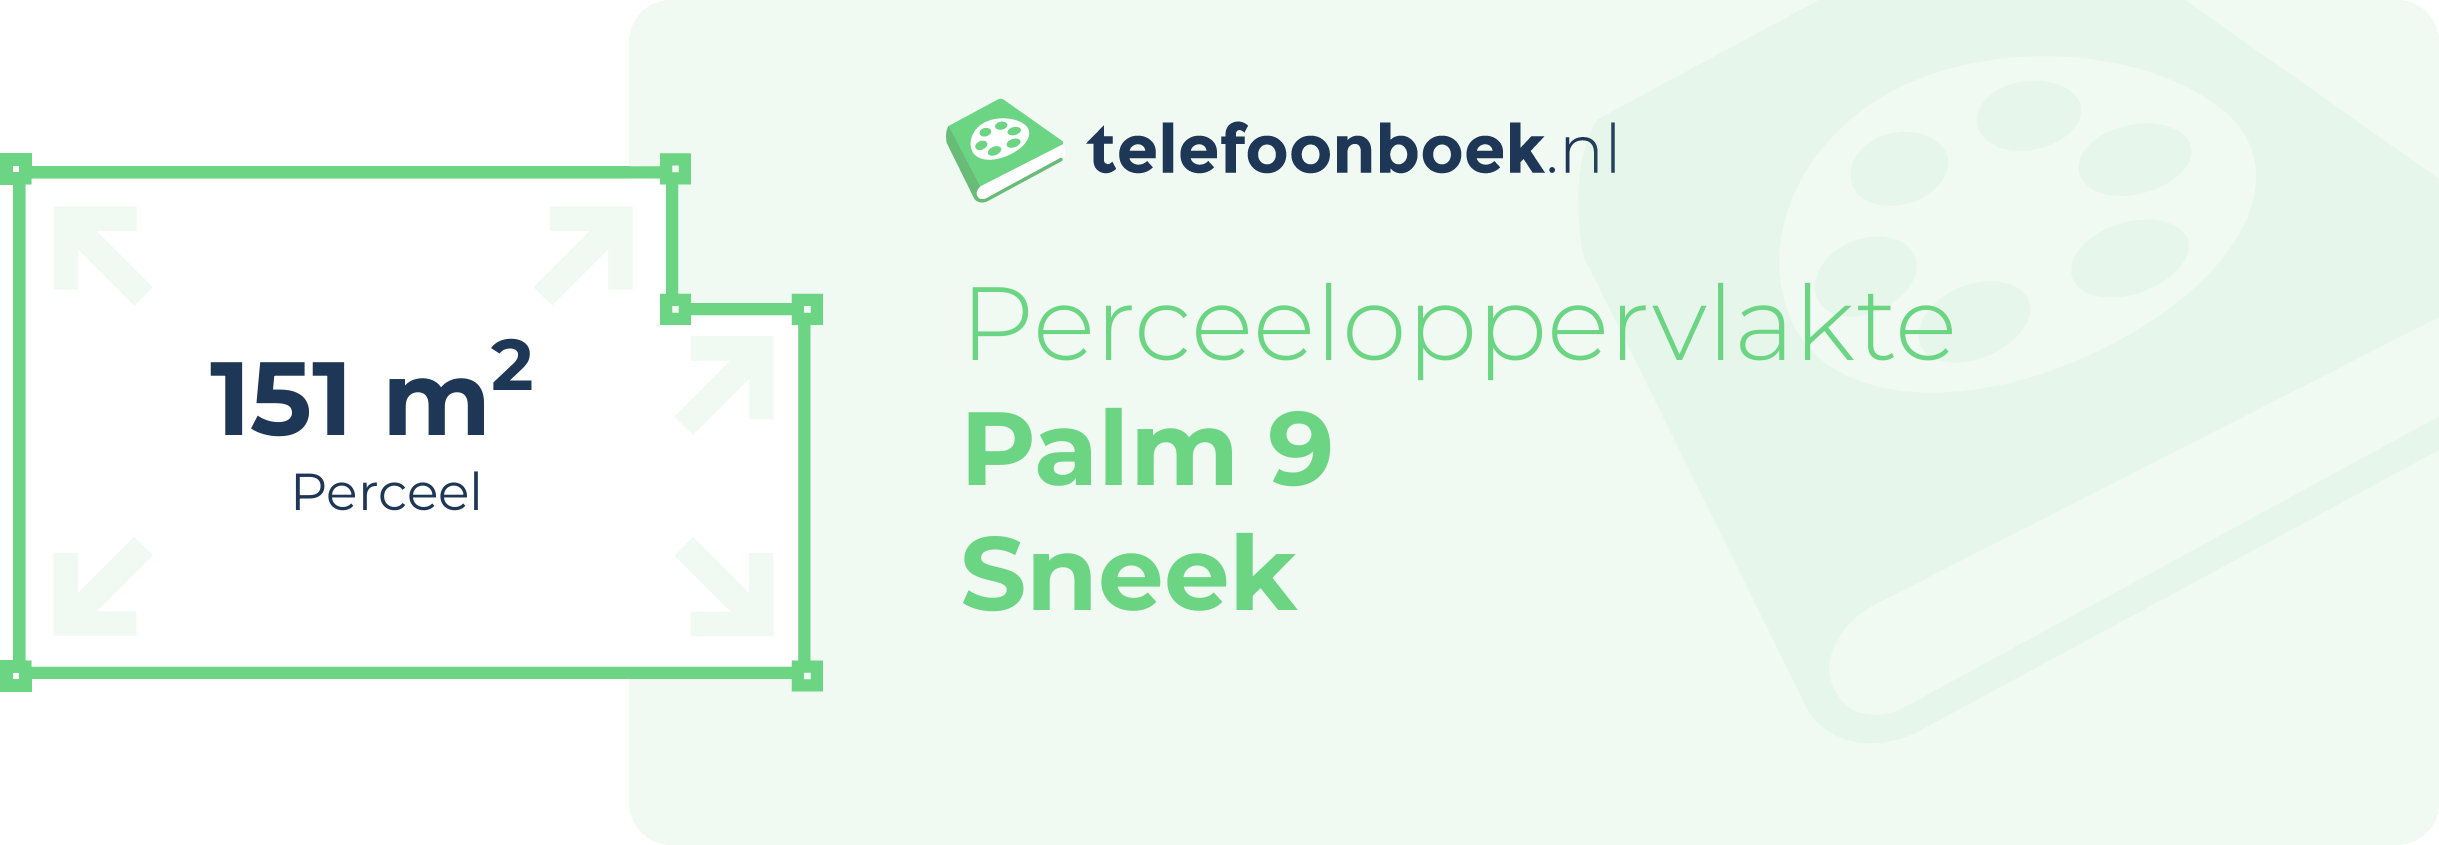 Perceeloppervlakte Palm 9 Sneek